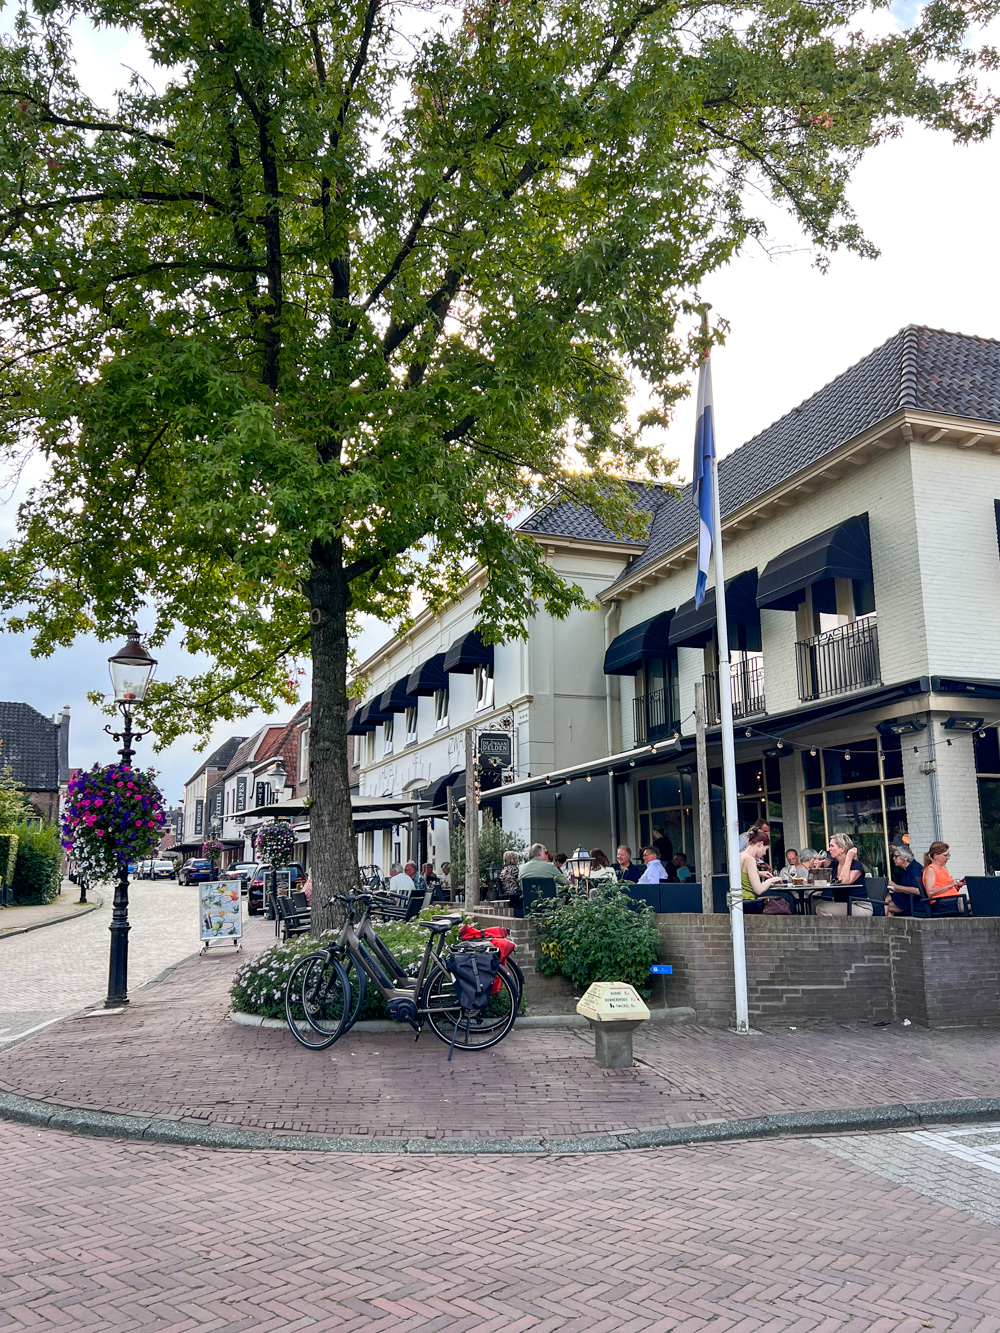 Mutter-Tochter Familen Zeit in der Twente Region in Holland - kommt mit auf unsere kleine Reise rund um die Kleinstadt Delden und der unsagbar schönen Landschaft und tollen Ausflugsziele.